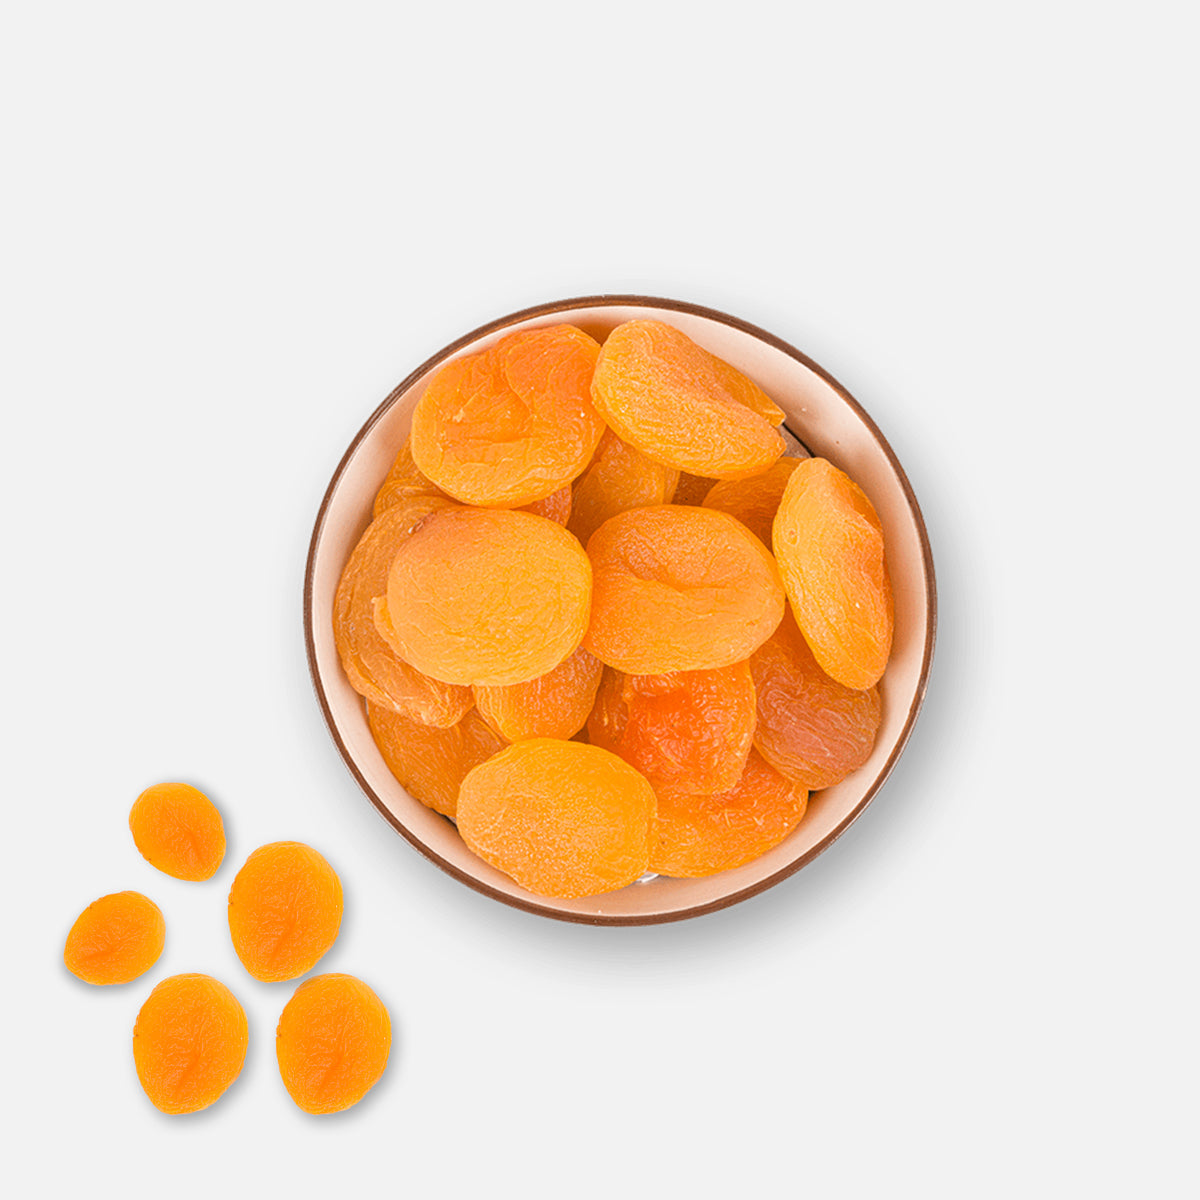 Dried Apricot - Mediterranea Italian food